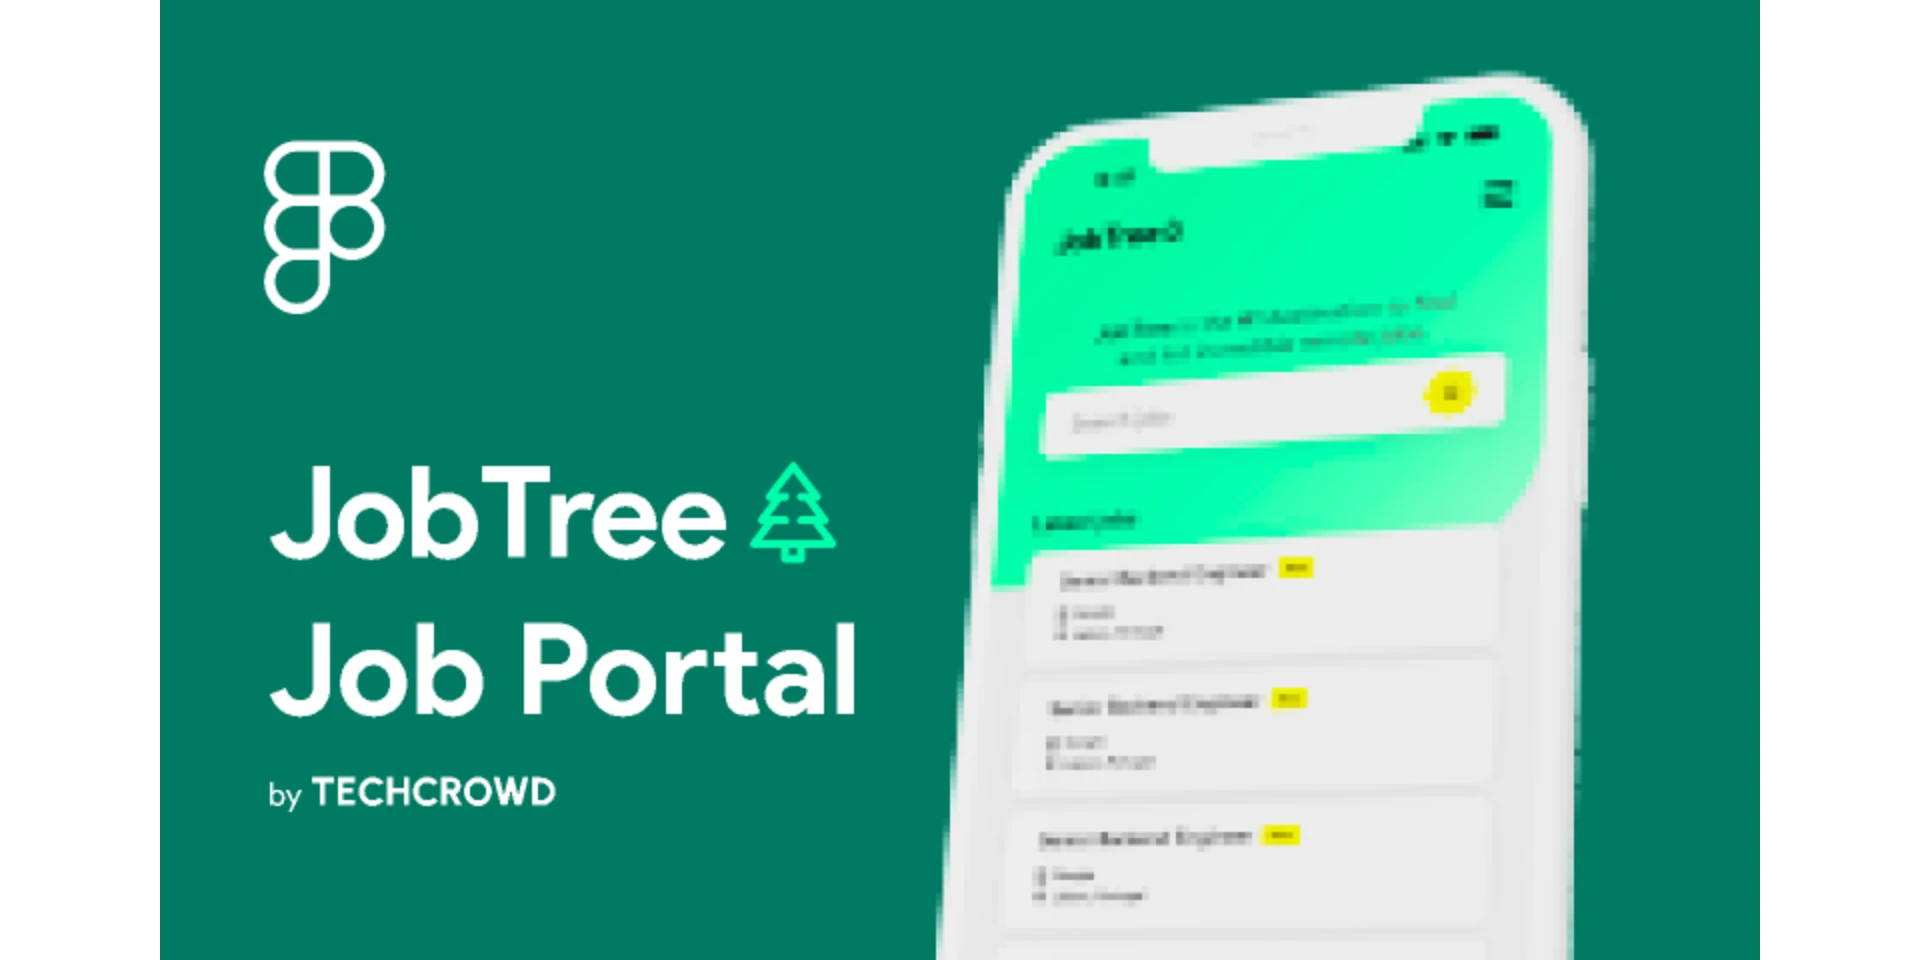 JobTreeJob Portal Mobile App UI for Figma and Adobe XD